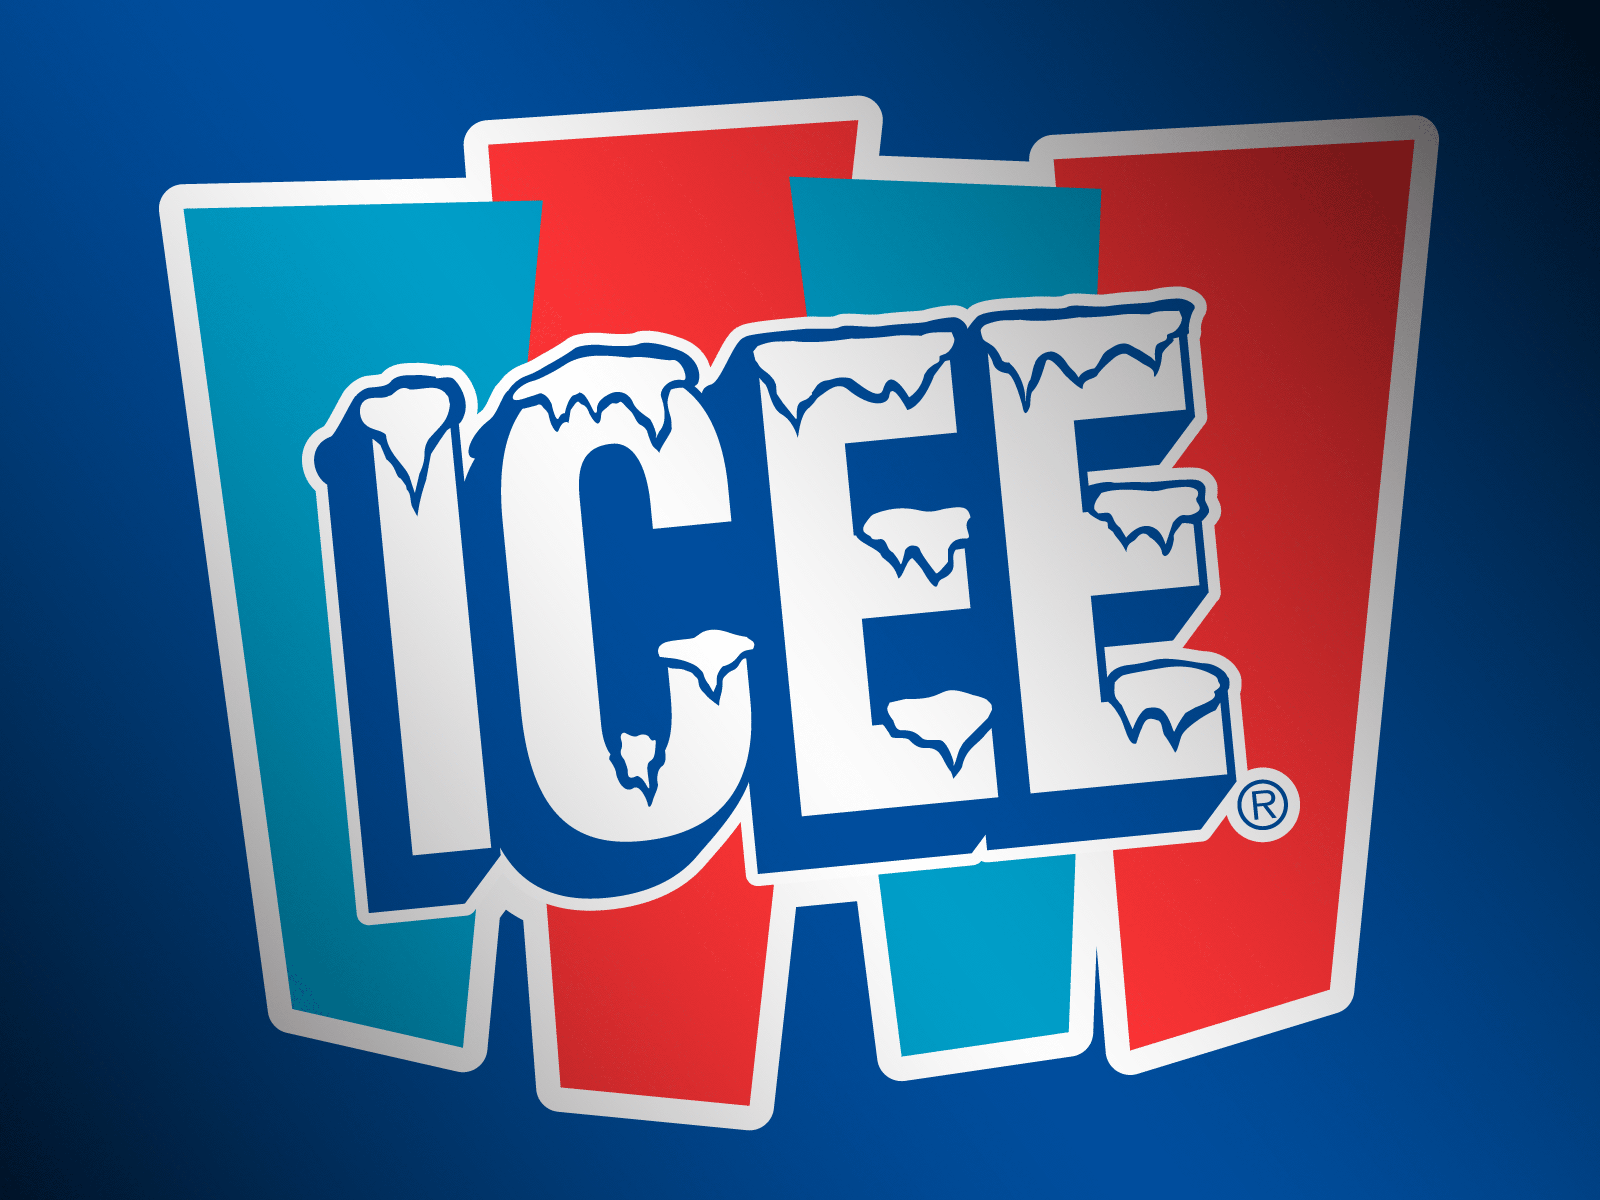 Icee Logo - Fun Zone | Wallpapers – ICEE